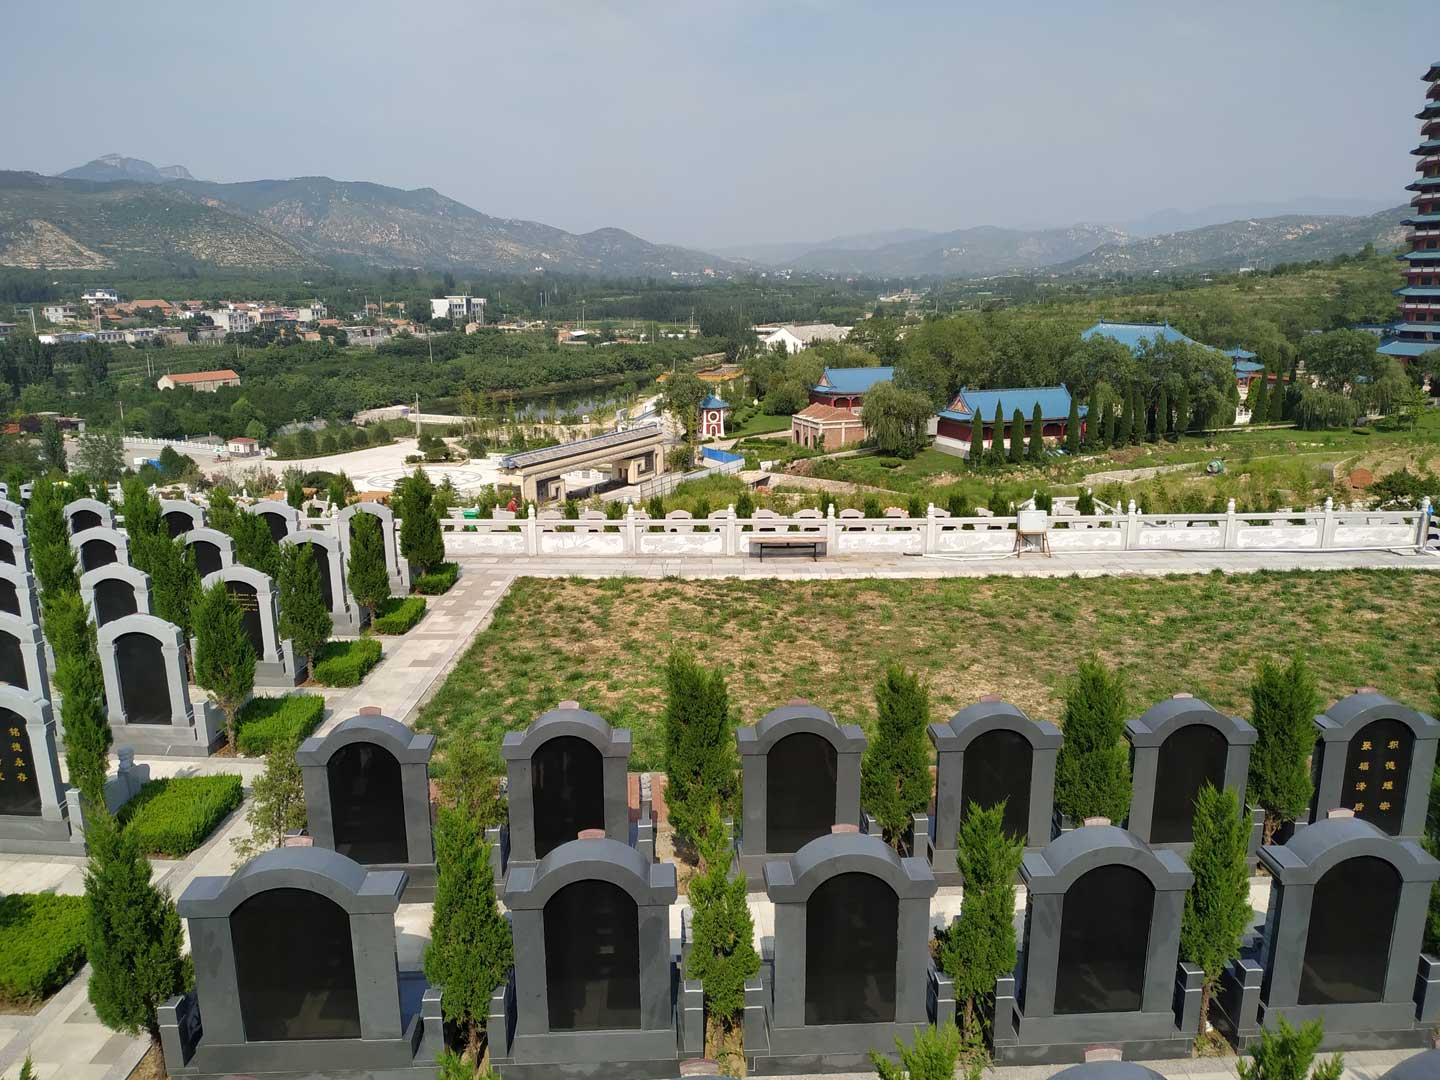 济南慈航园公墓